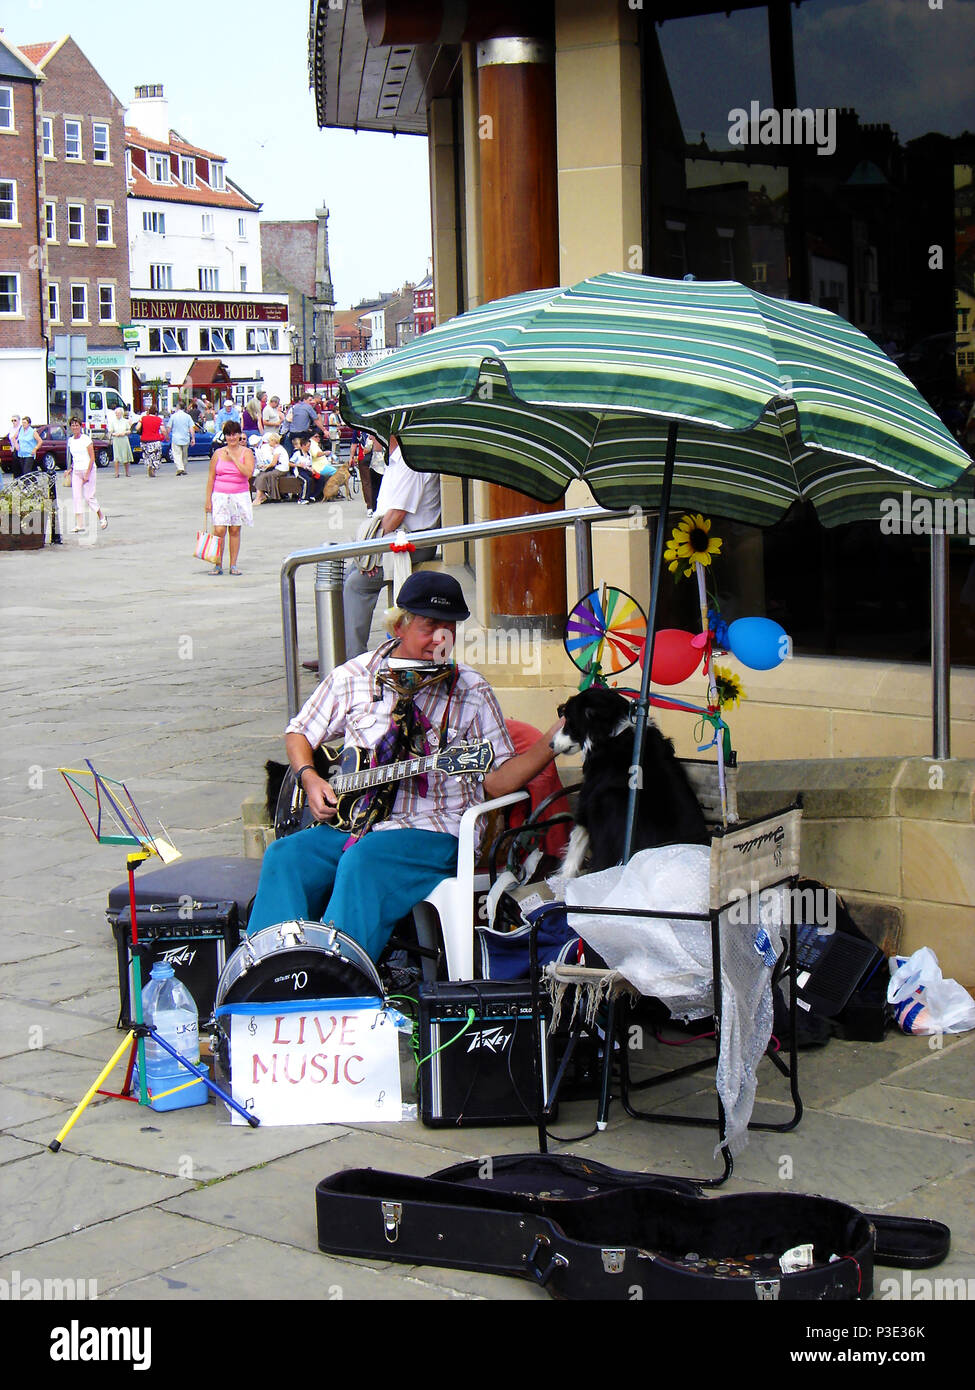 LIVE MUSIC - Un homme et son chien - musicien ambulant joue pour les touristes et les habitants à Whitby, North Yorkshire, UK Banque D'Images